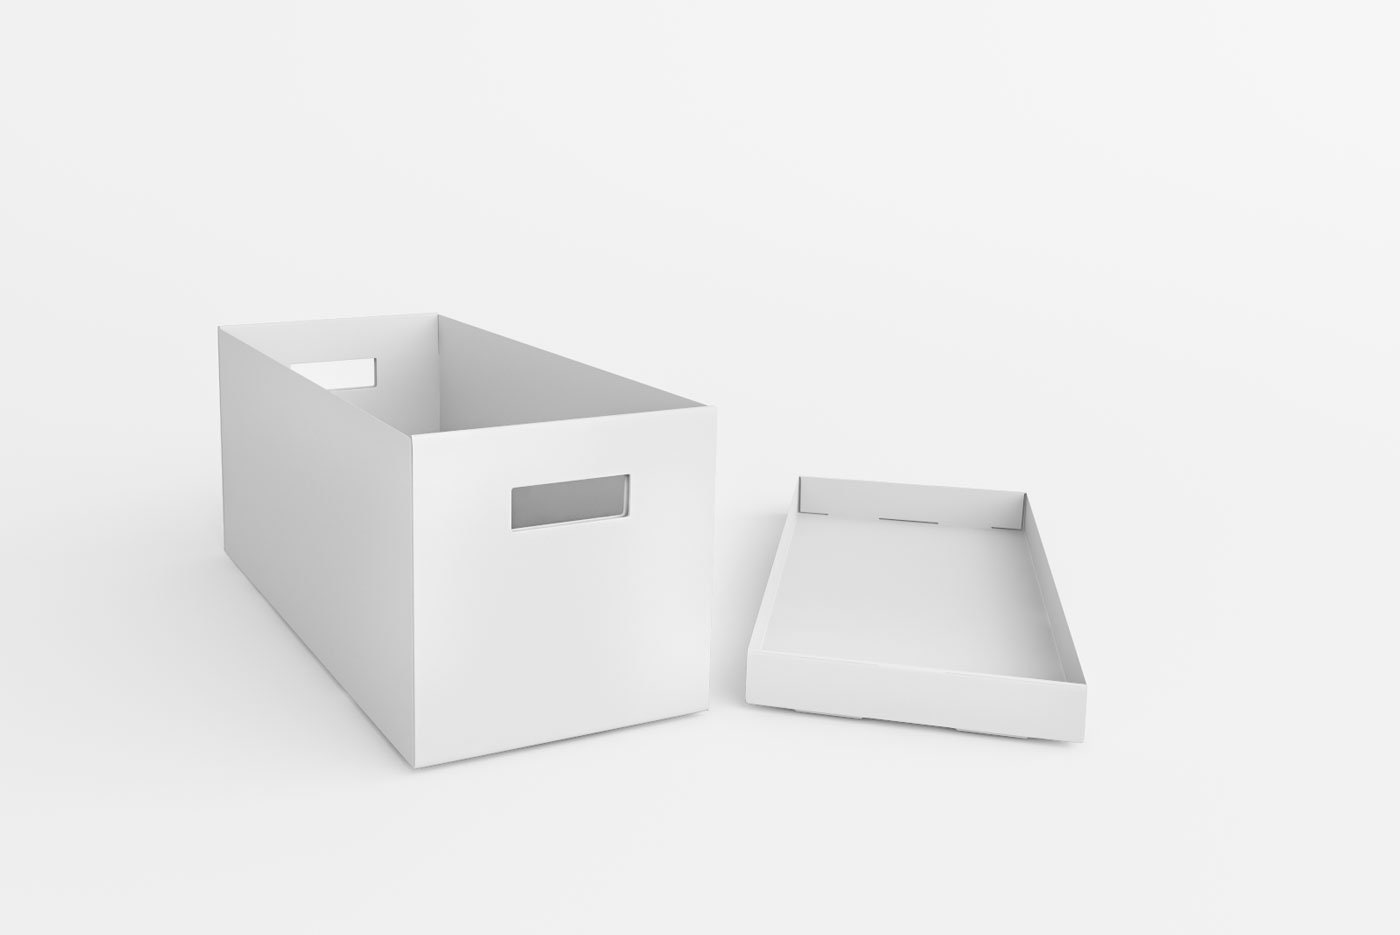 Inserto KALLAX con cajas 2 (004.323.01) - opiniones, precios, dónde comprar